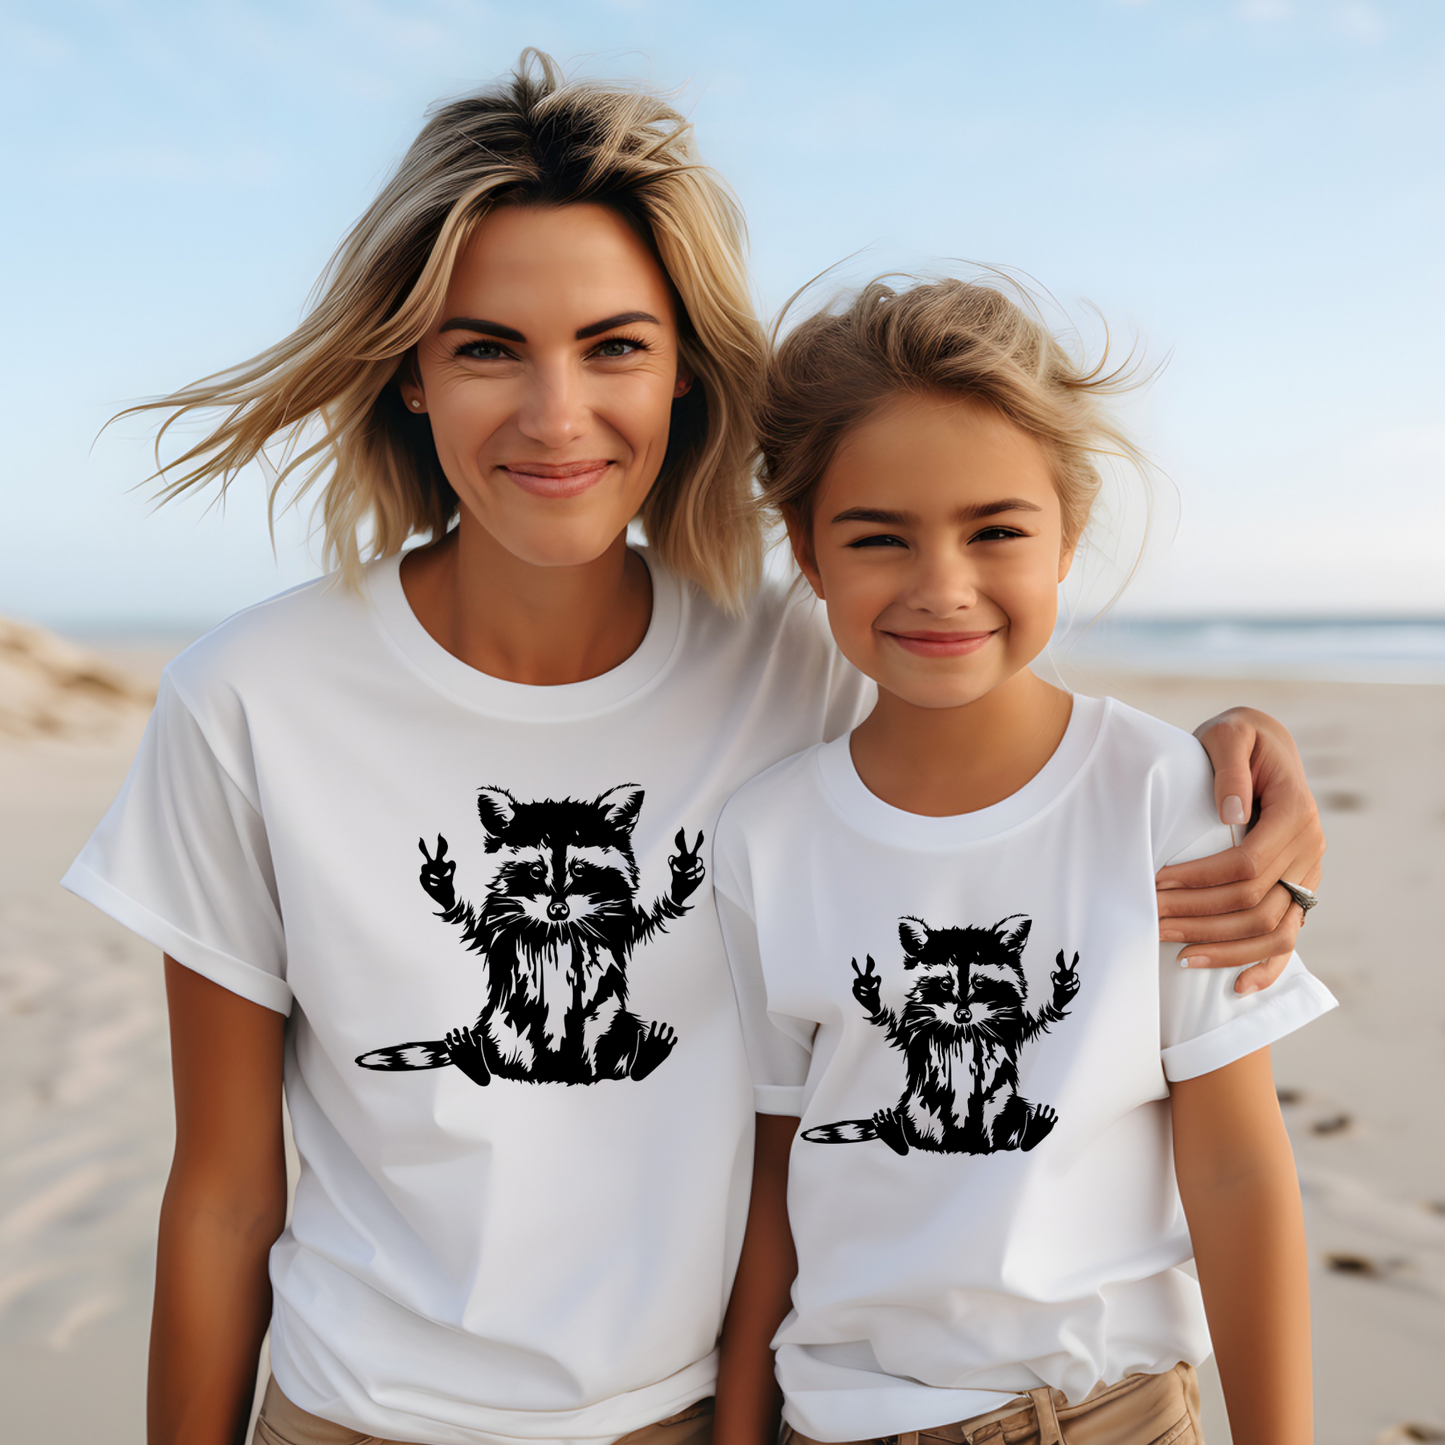 Trash can panda | Racoon t-shirt | Kids t-shirt